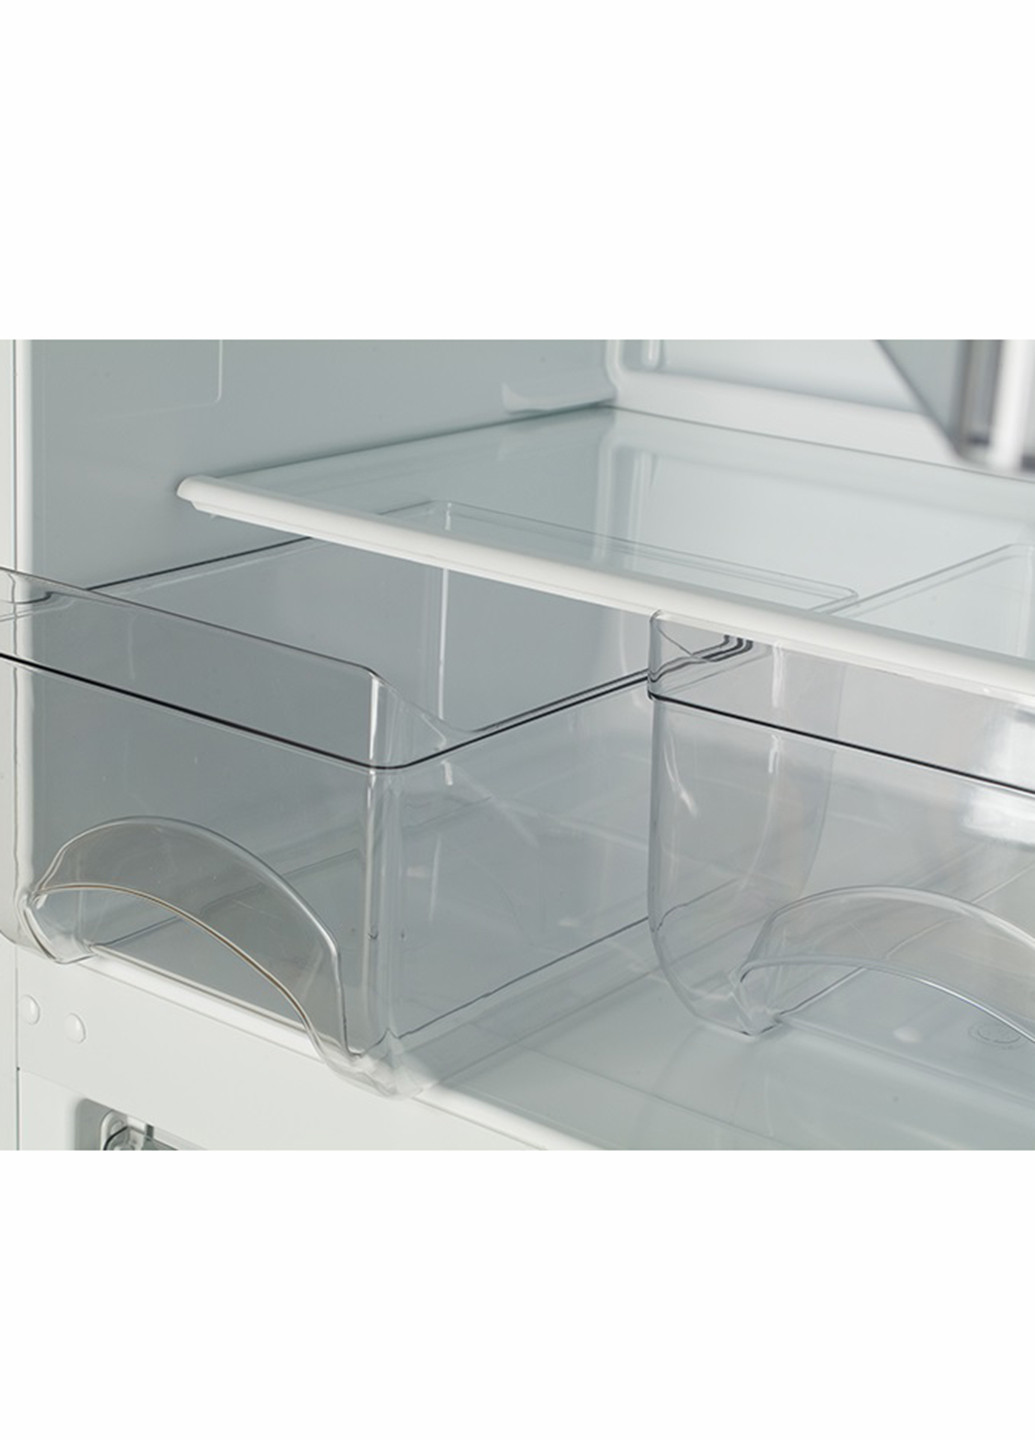 Холодильник XM-4009-100 ATLANT хм 4009-100 (129869397)